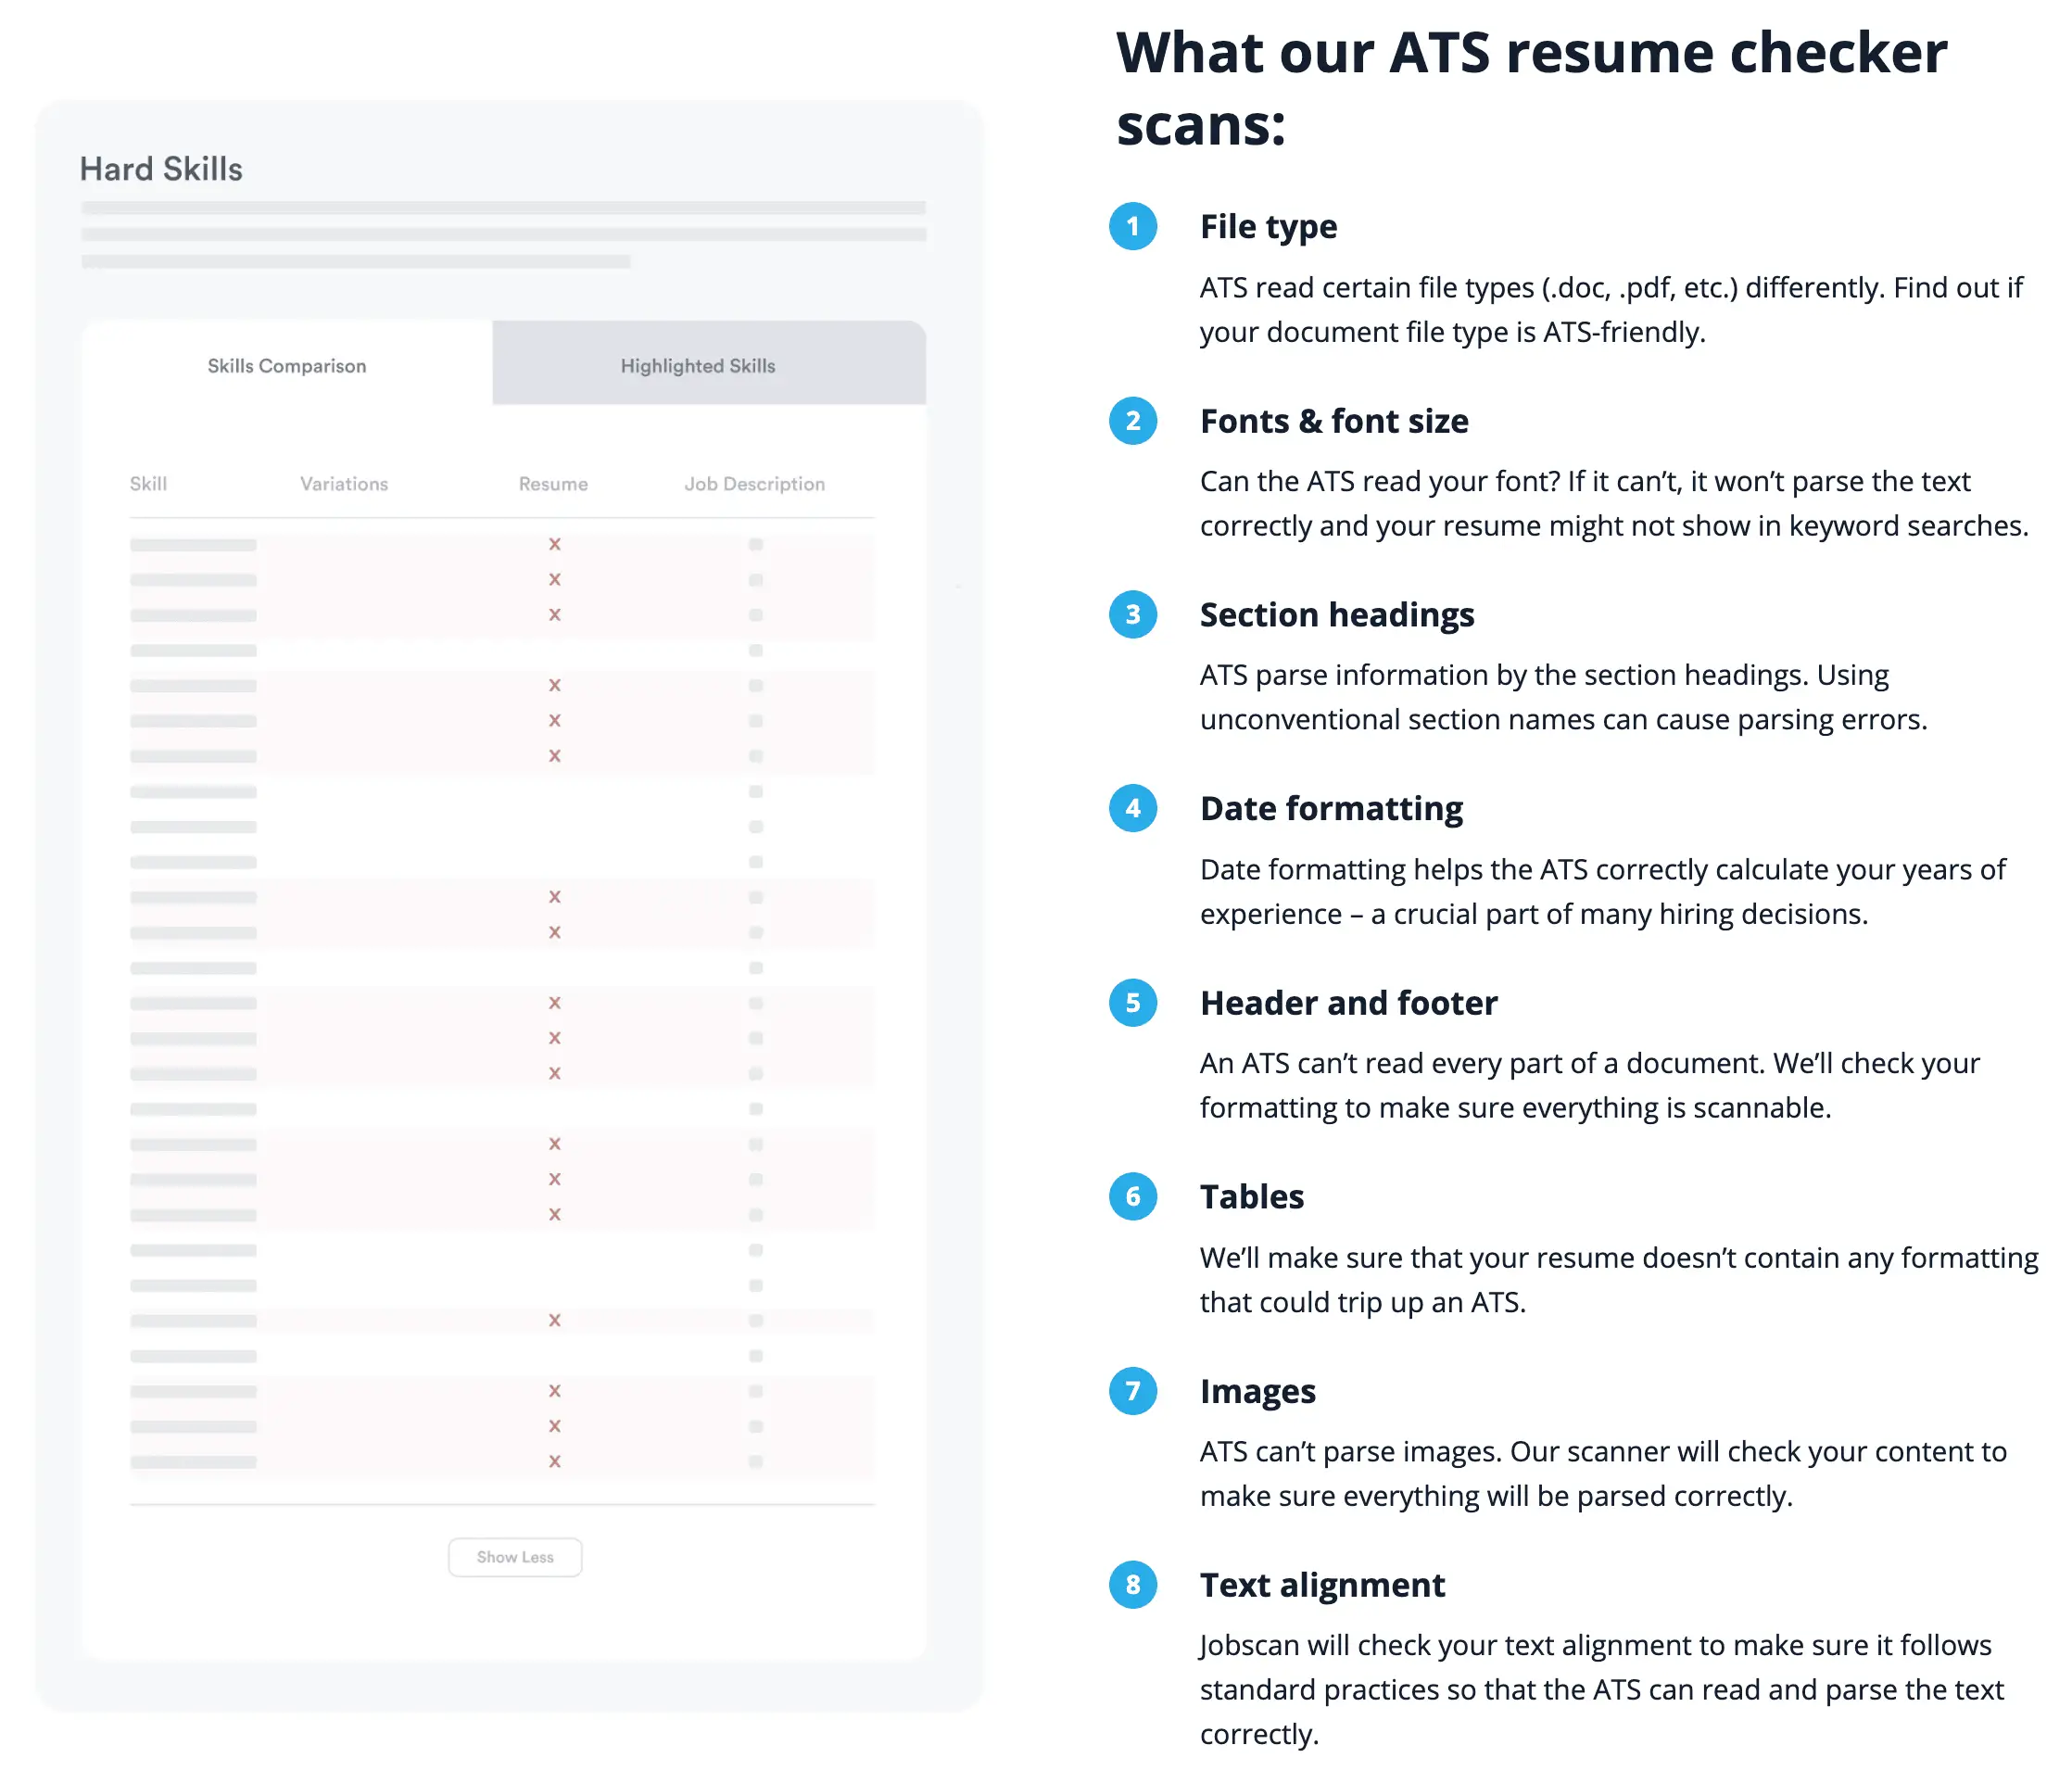 Jobscan ATS Resume Checker